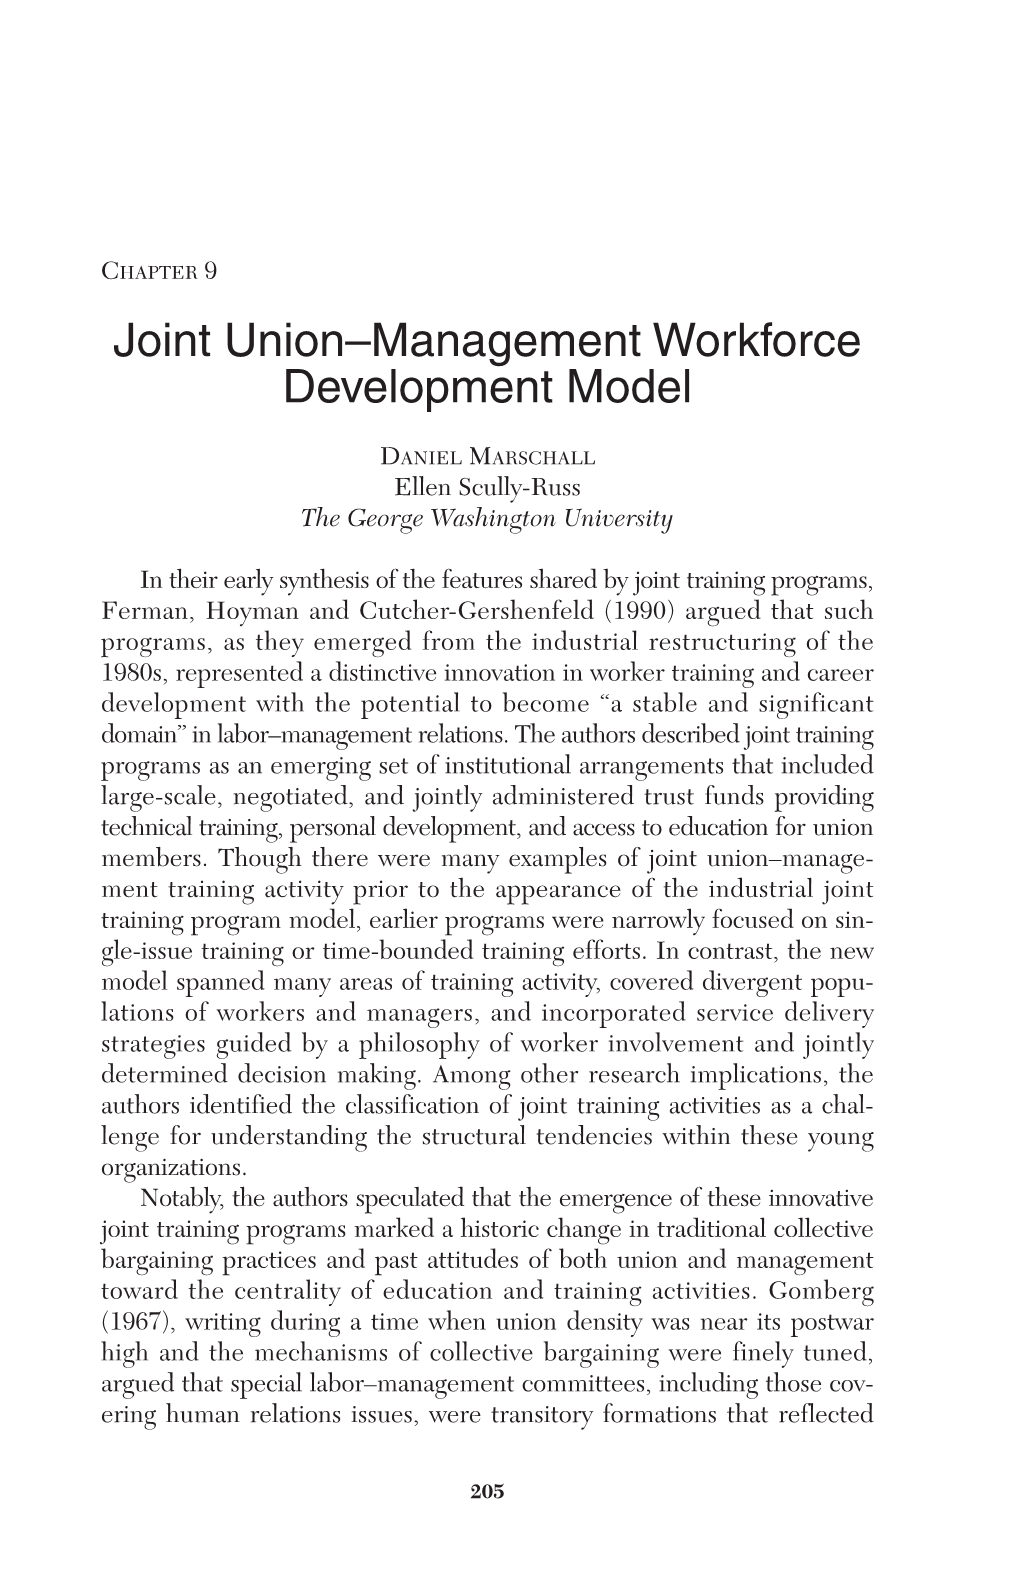 Joint Union–Management Workforce Development Model